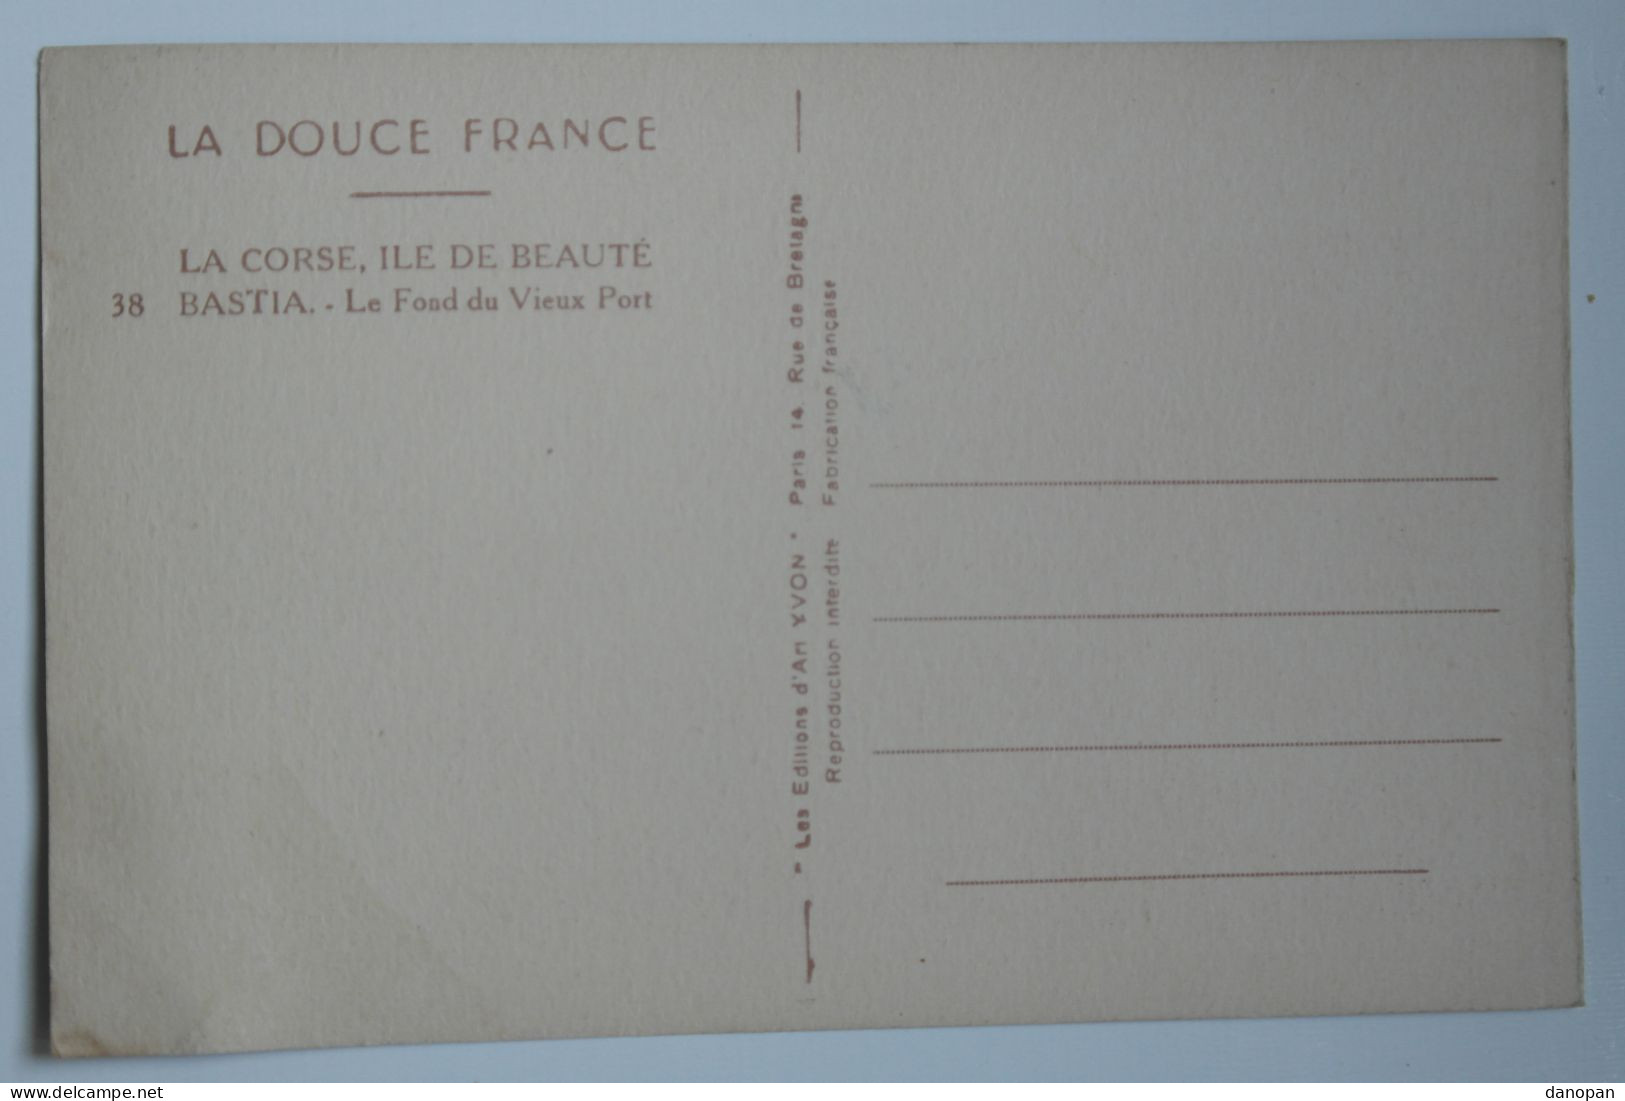 Lot 20 cpa 100% France - Animées, cartes rares. Belles cartes, toutes en photos, pas de mauvaises surprises - BL57